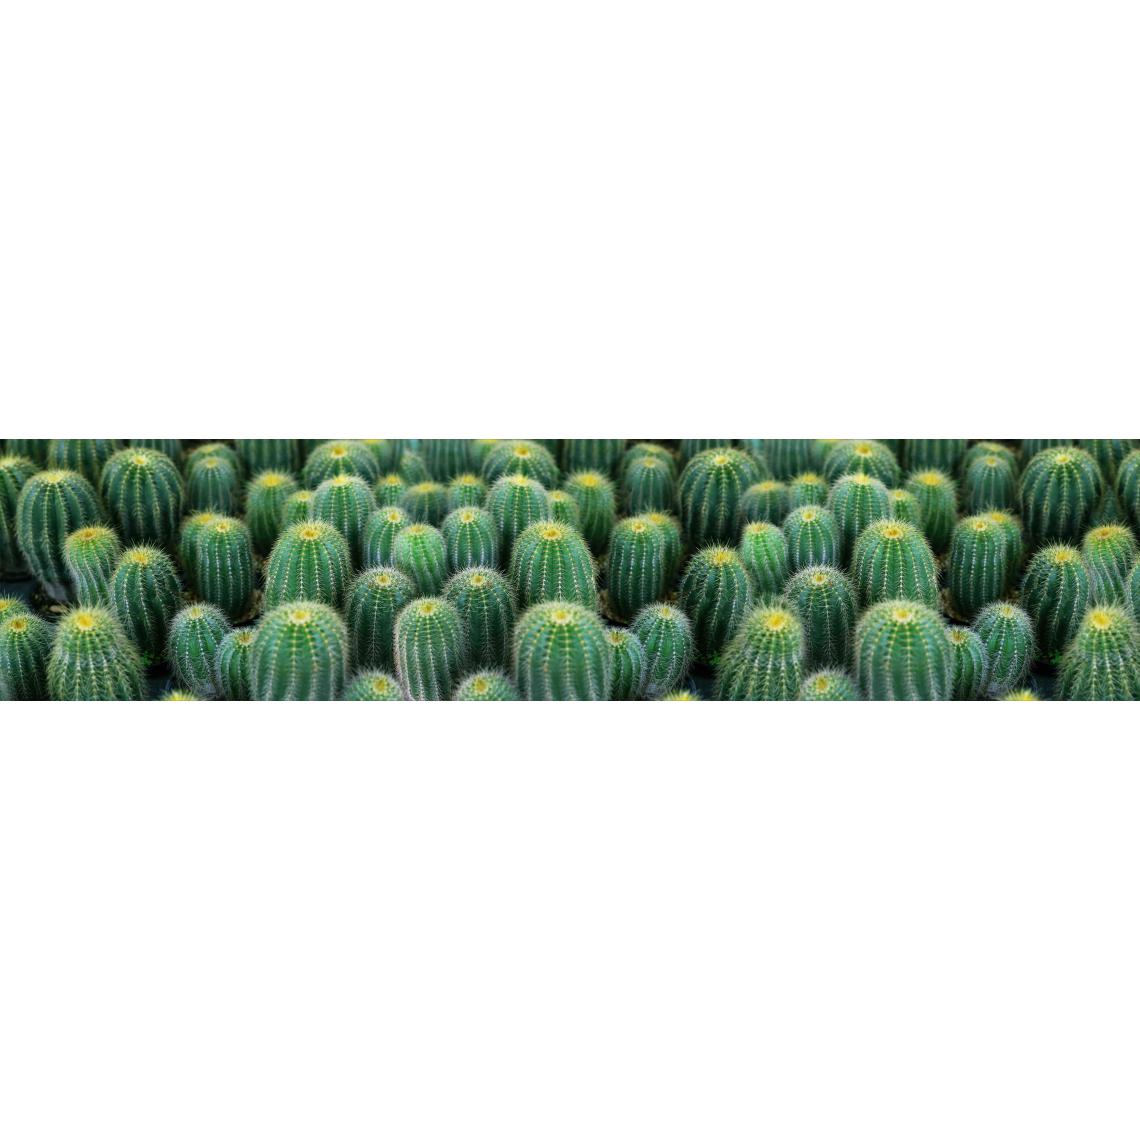 Alter - Chemin de cuisine, 100% Made in Italy, Tapis antitache avec impression numérique, Tapis antidérapant et lavable, Modèle Cactus - Brigitte, cm 240x52 - Tapis